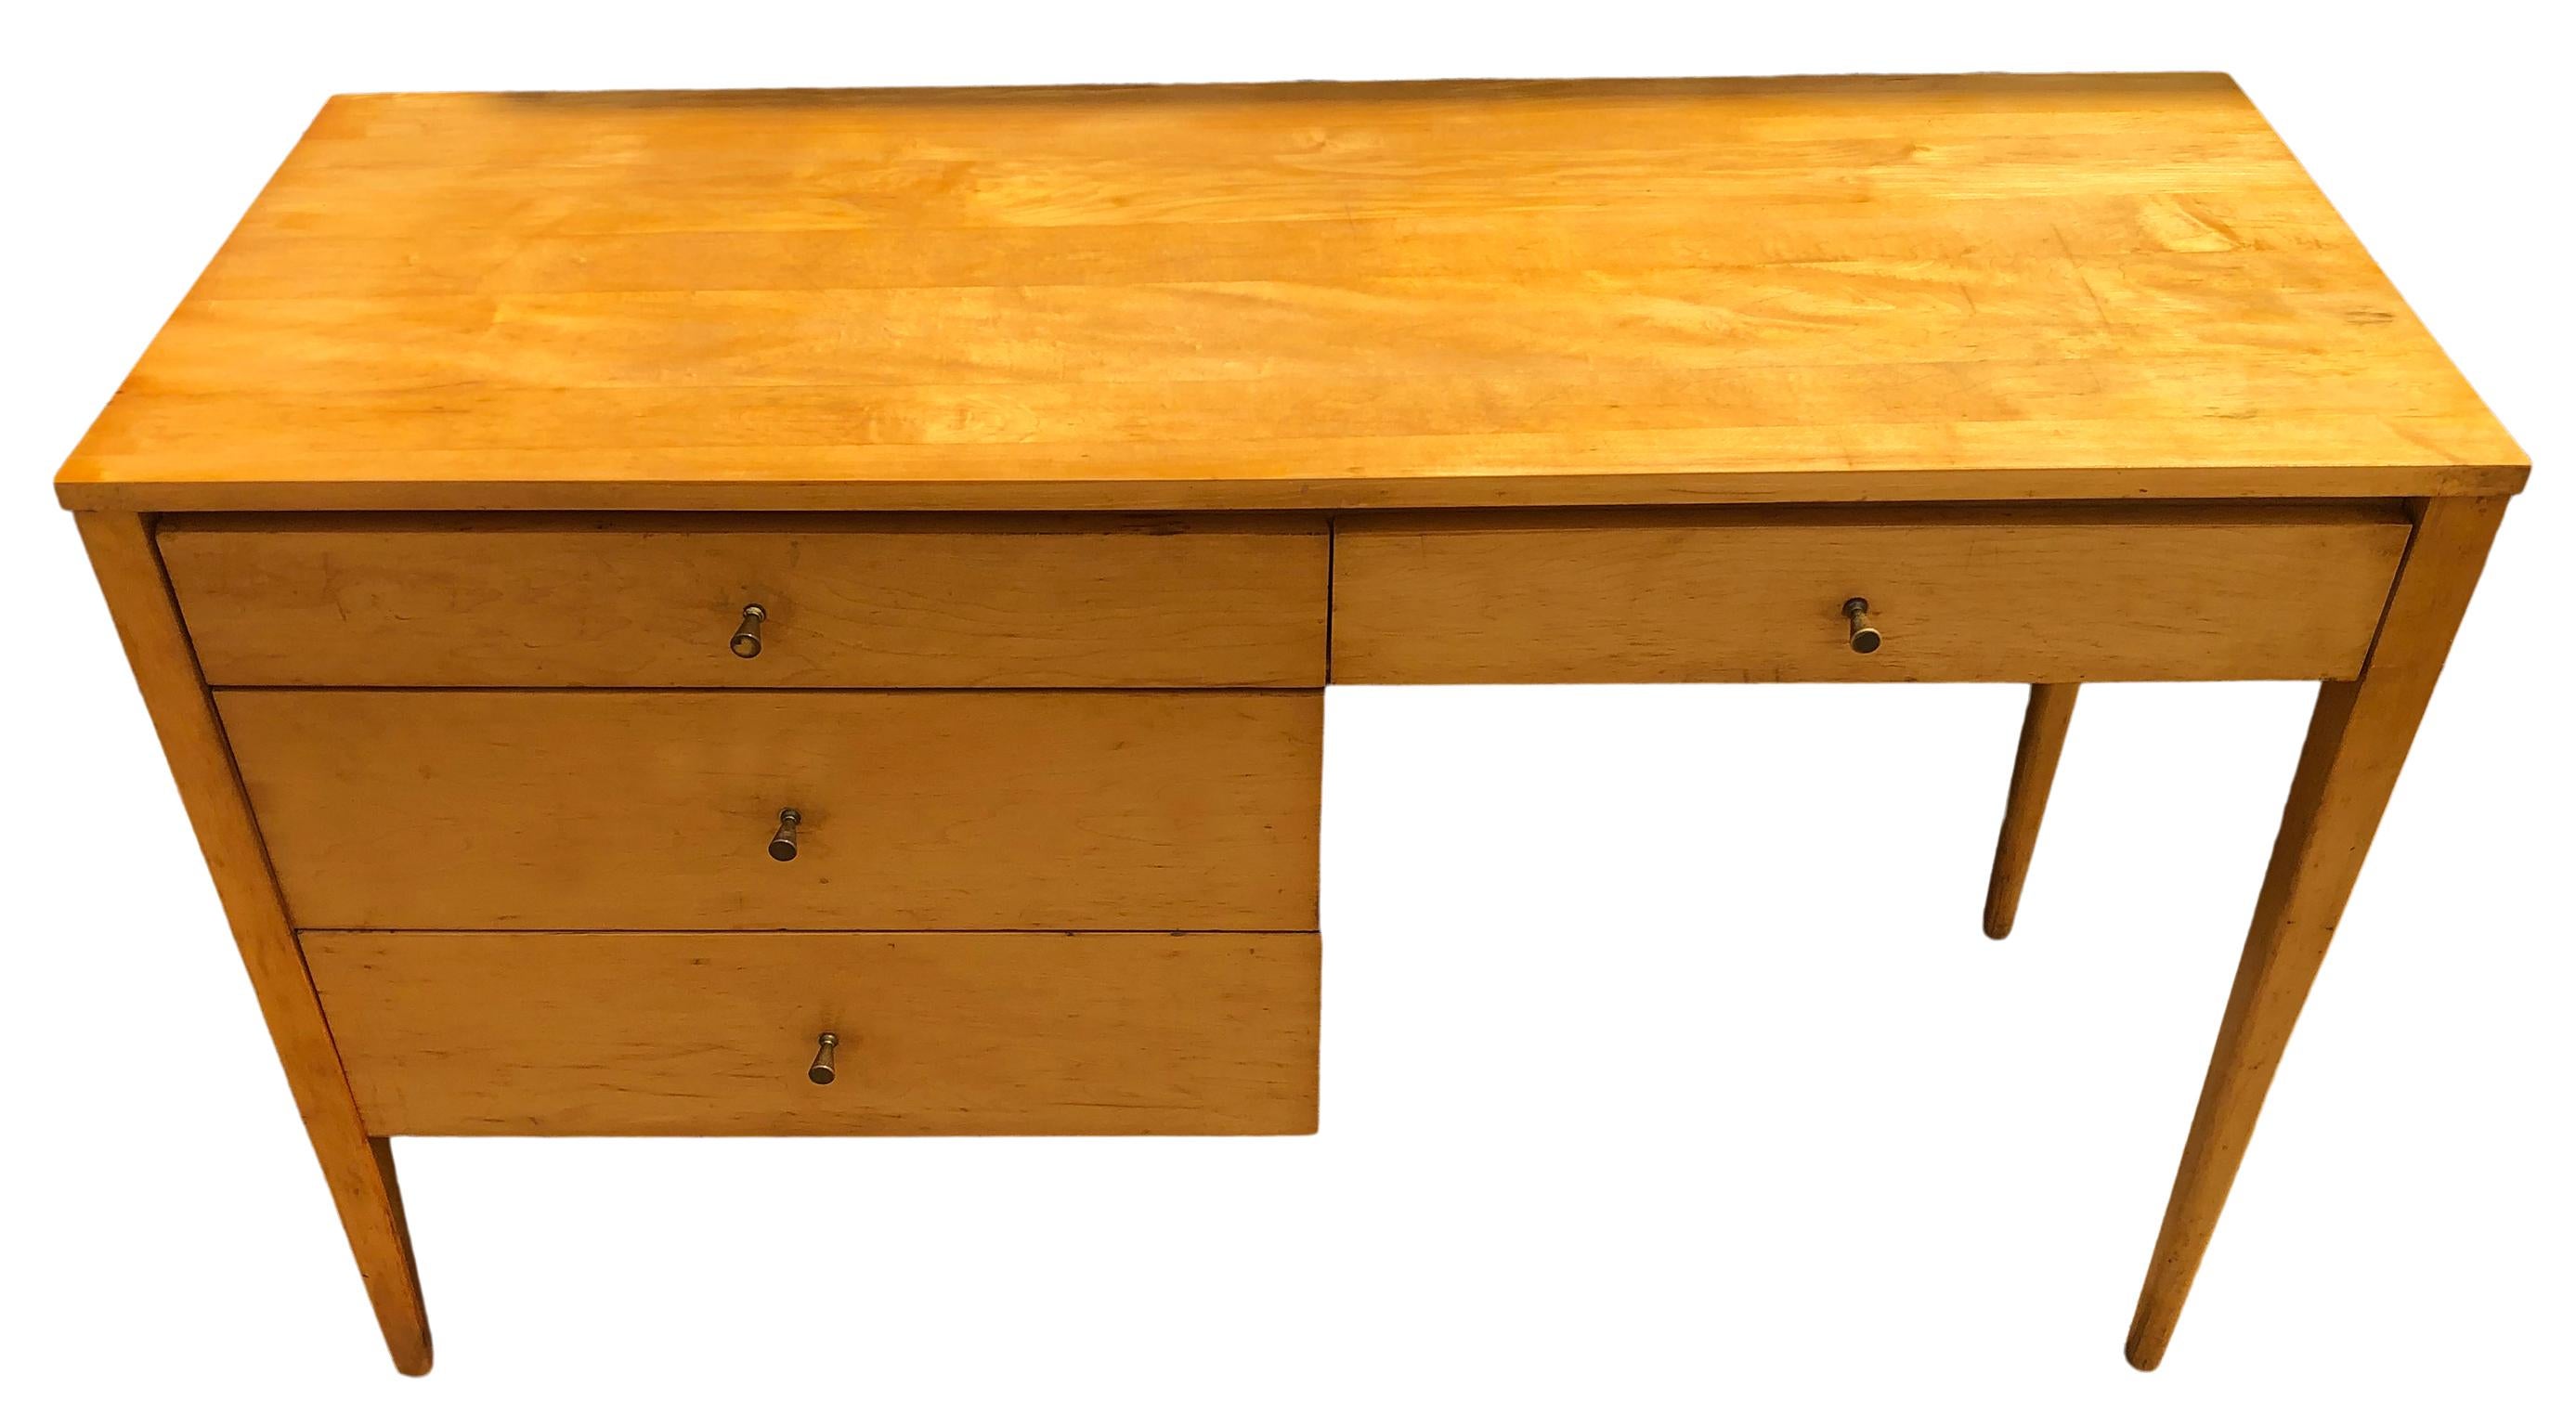 Schöne Paul McCobb Planner Group #1567 vier Schubladen Schreibtisch blond Ahorn Finish Messing zieht massivem Ahorn. Der Schreibtisch ist im originalen Vintage-Zustand. Sehr schön gestalteter Schreibtisch auf geraden Beinen - ganz aus massivem